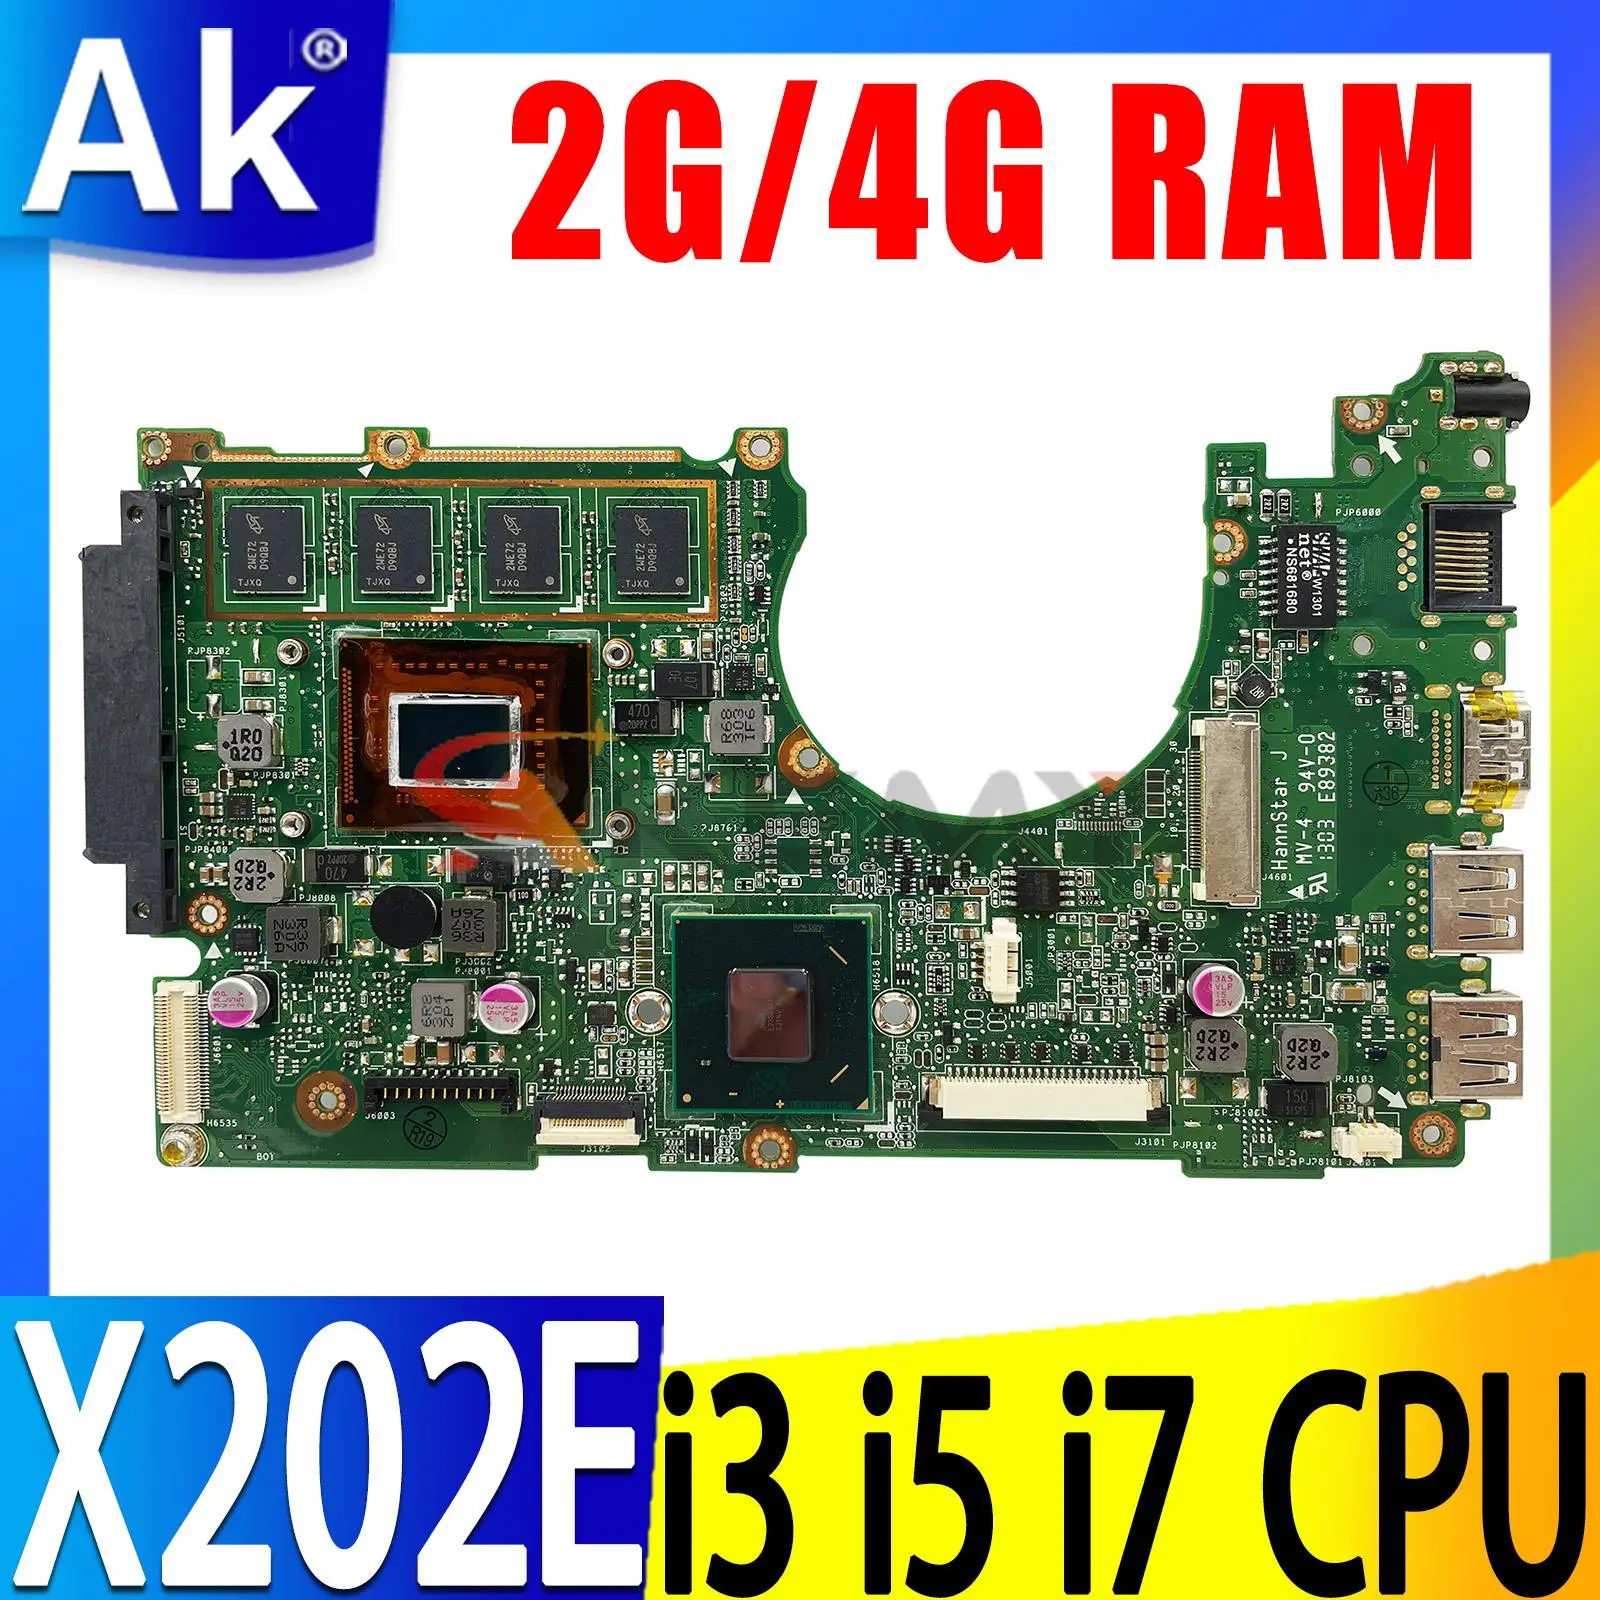 

X202E Notebook Mainboard 1007U I3 I5 I7 CPU 2GB 4GB RAM For ASUS S200E X202EP X202EV X202E X201EP X201EV Laptop Motherboard